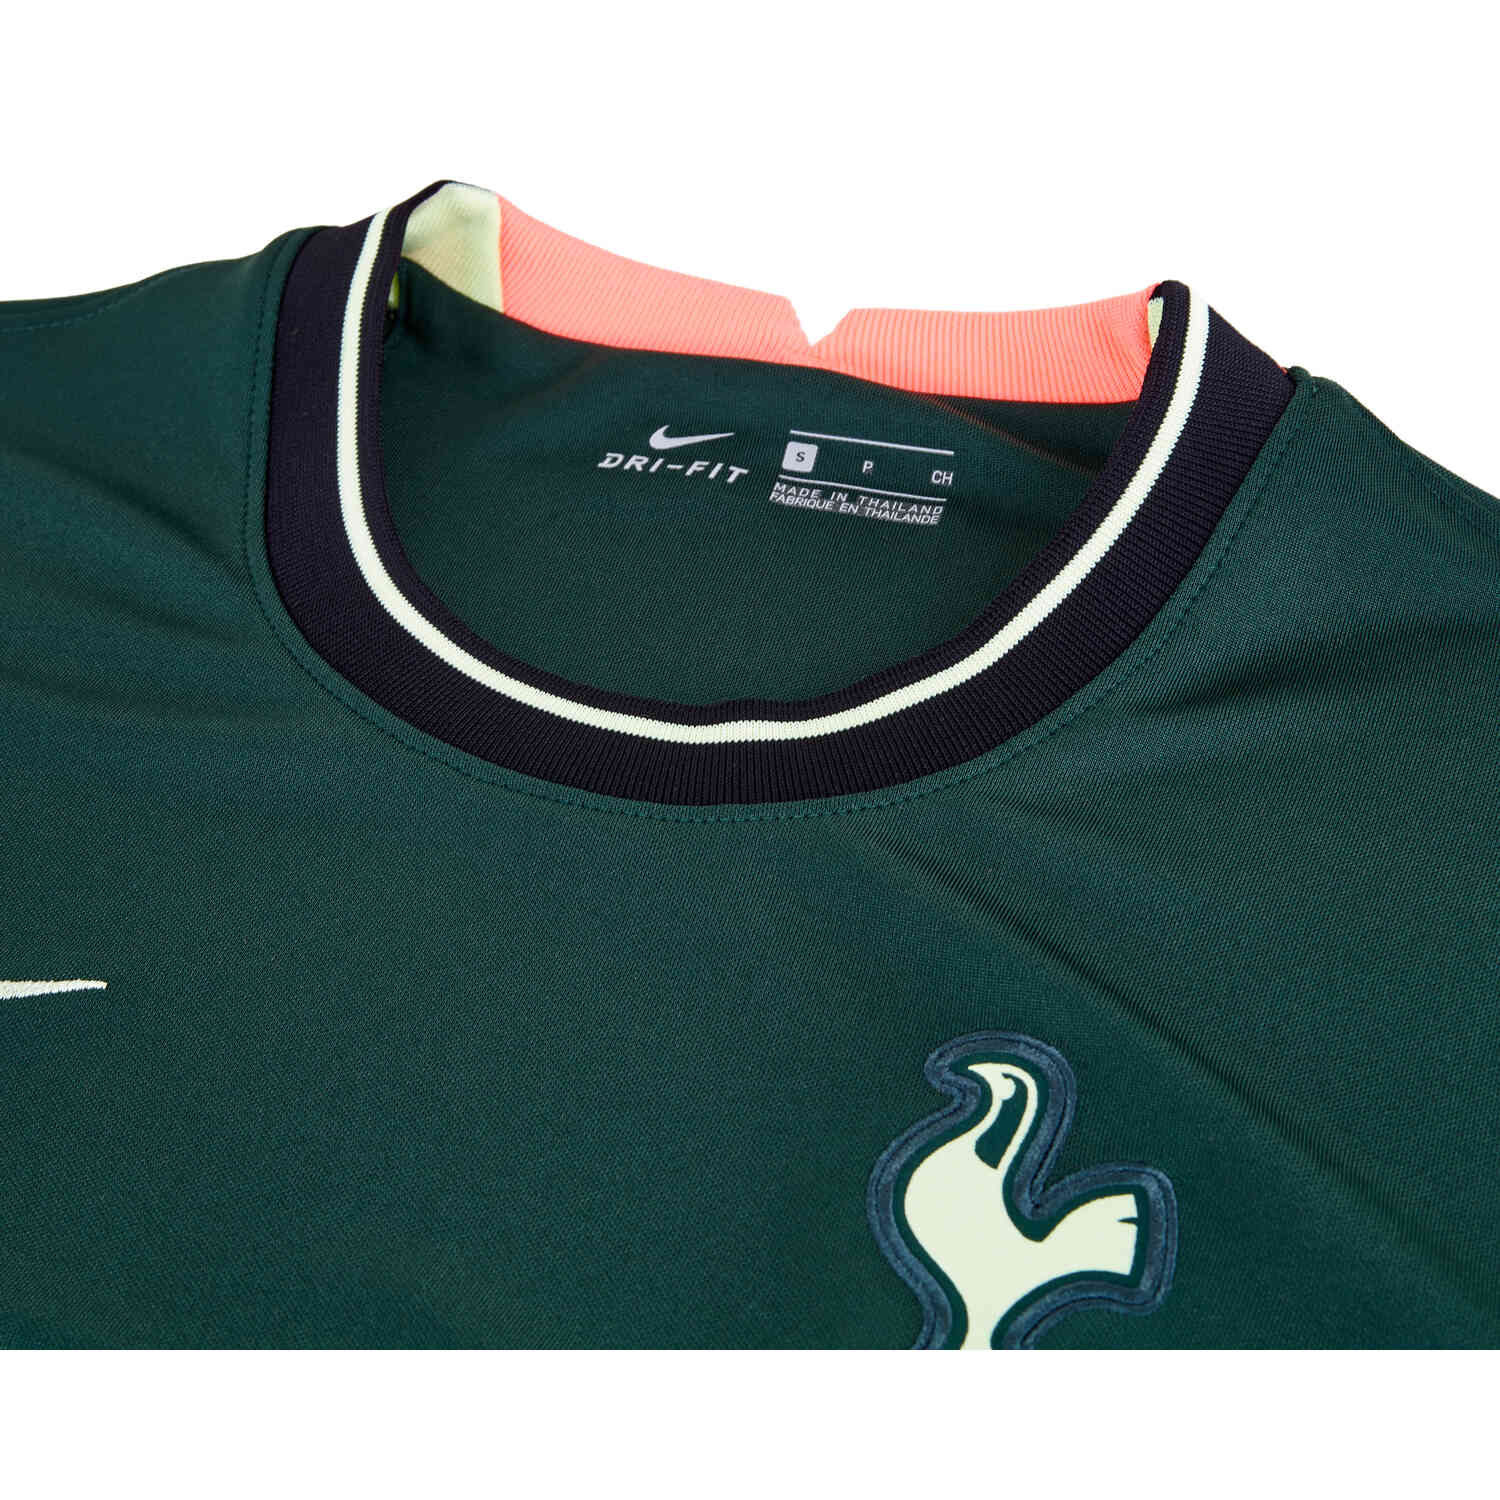 2022/23 Nike Tottenham Away Jersey - SoccerPro